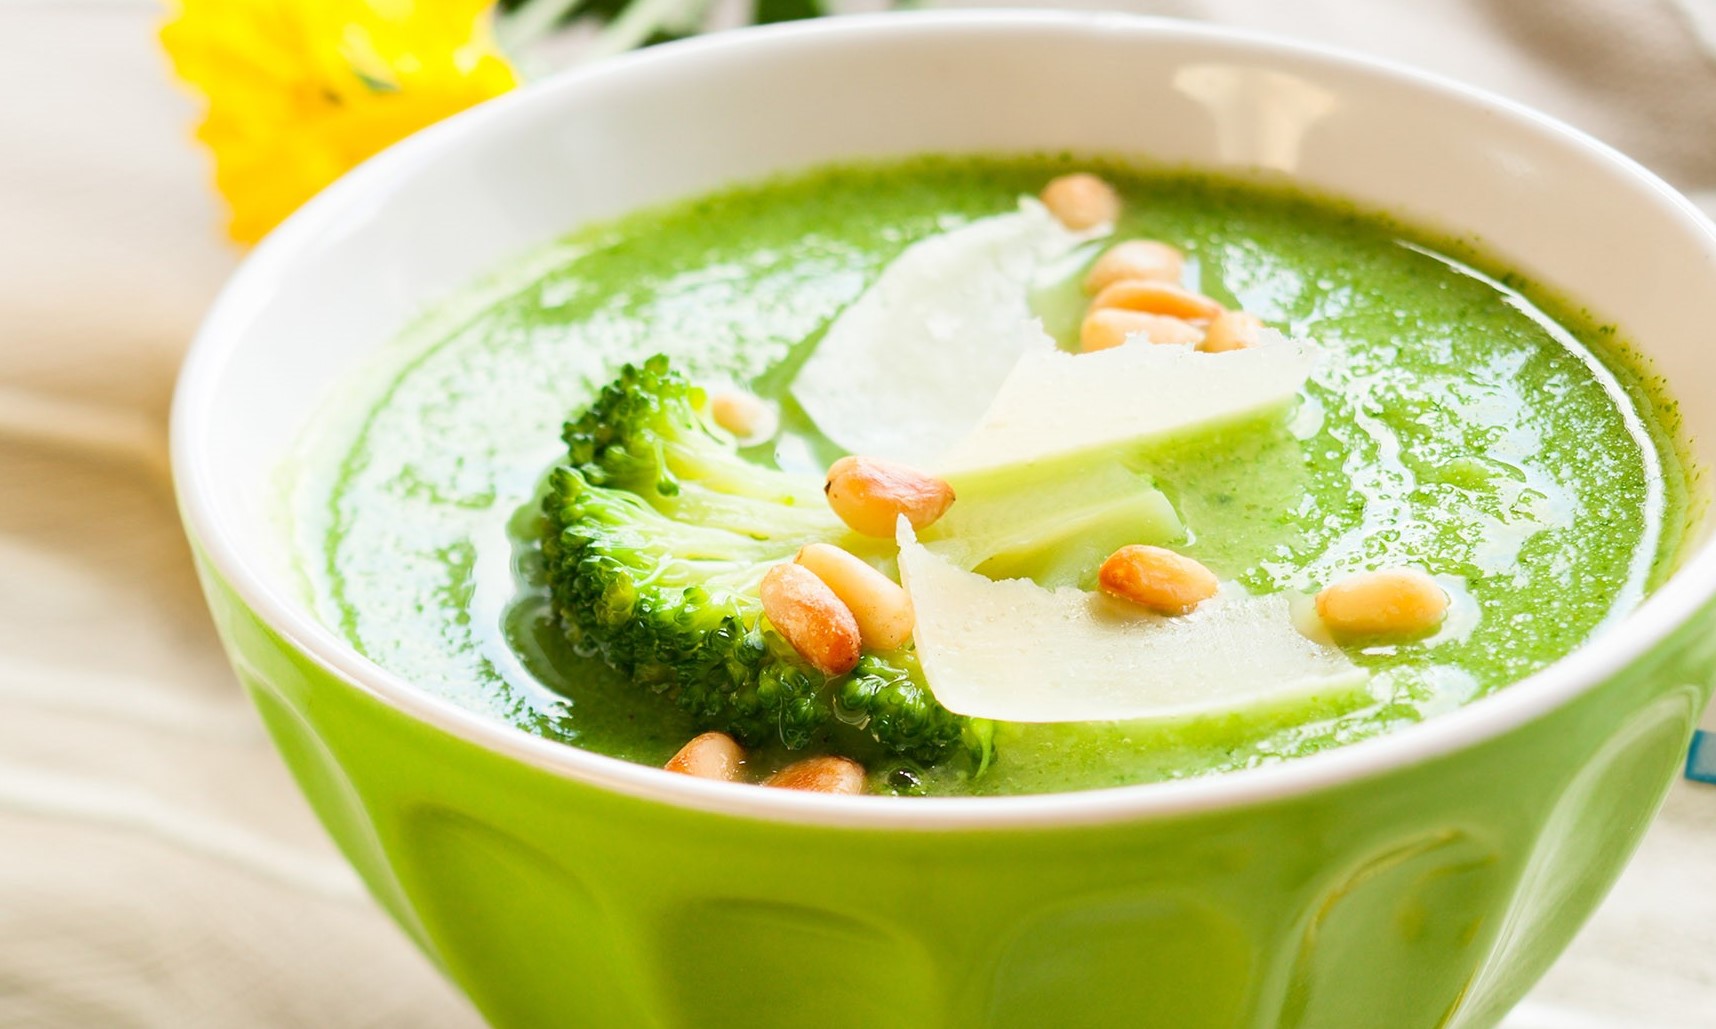 Суп пюре из овощей рецепты с фото